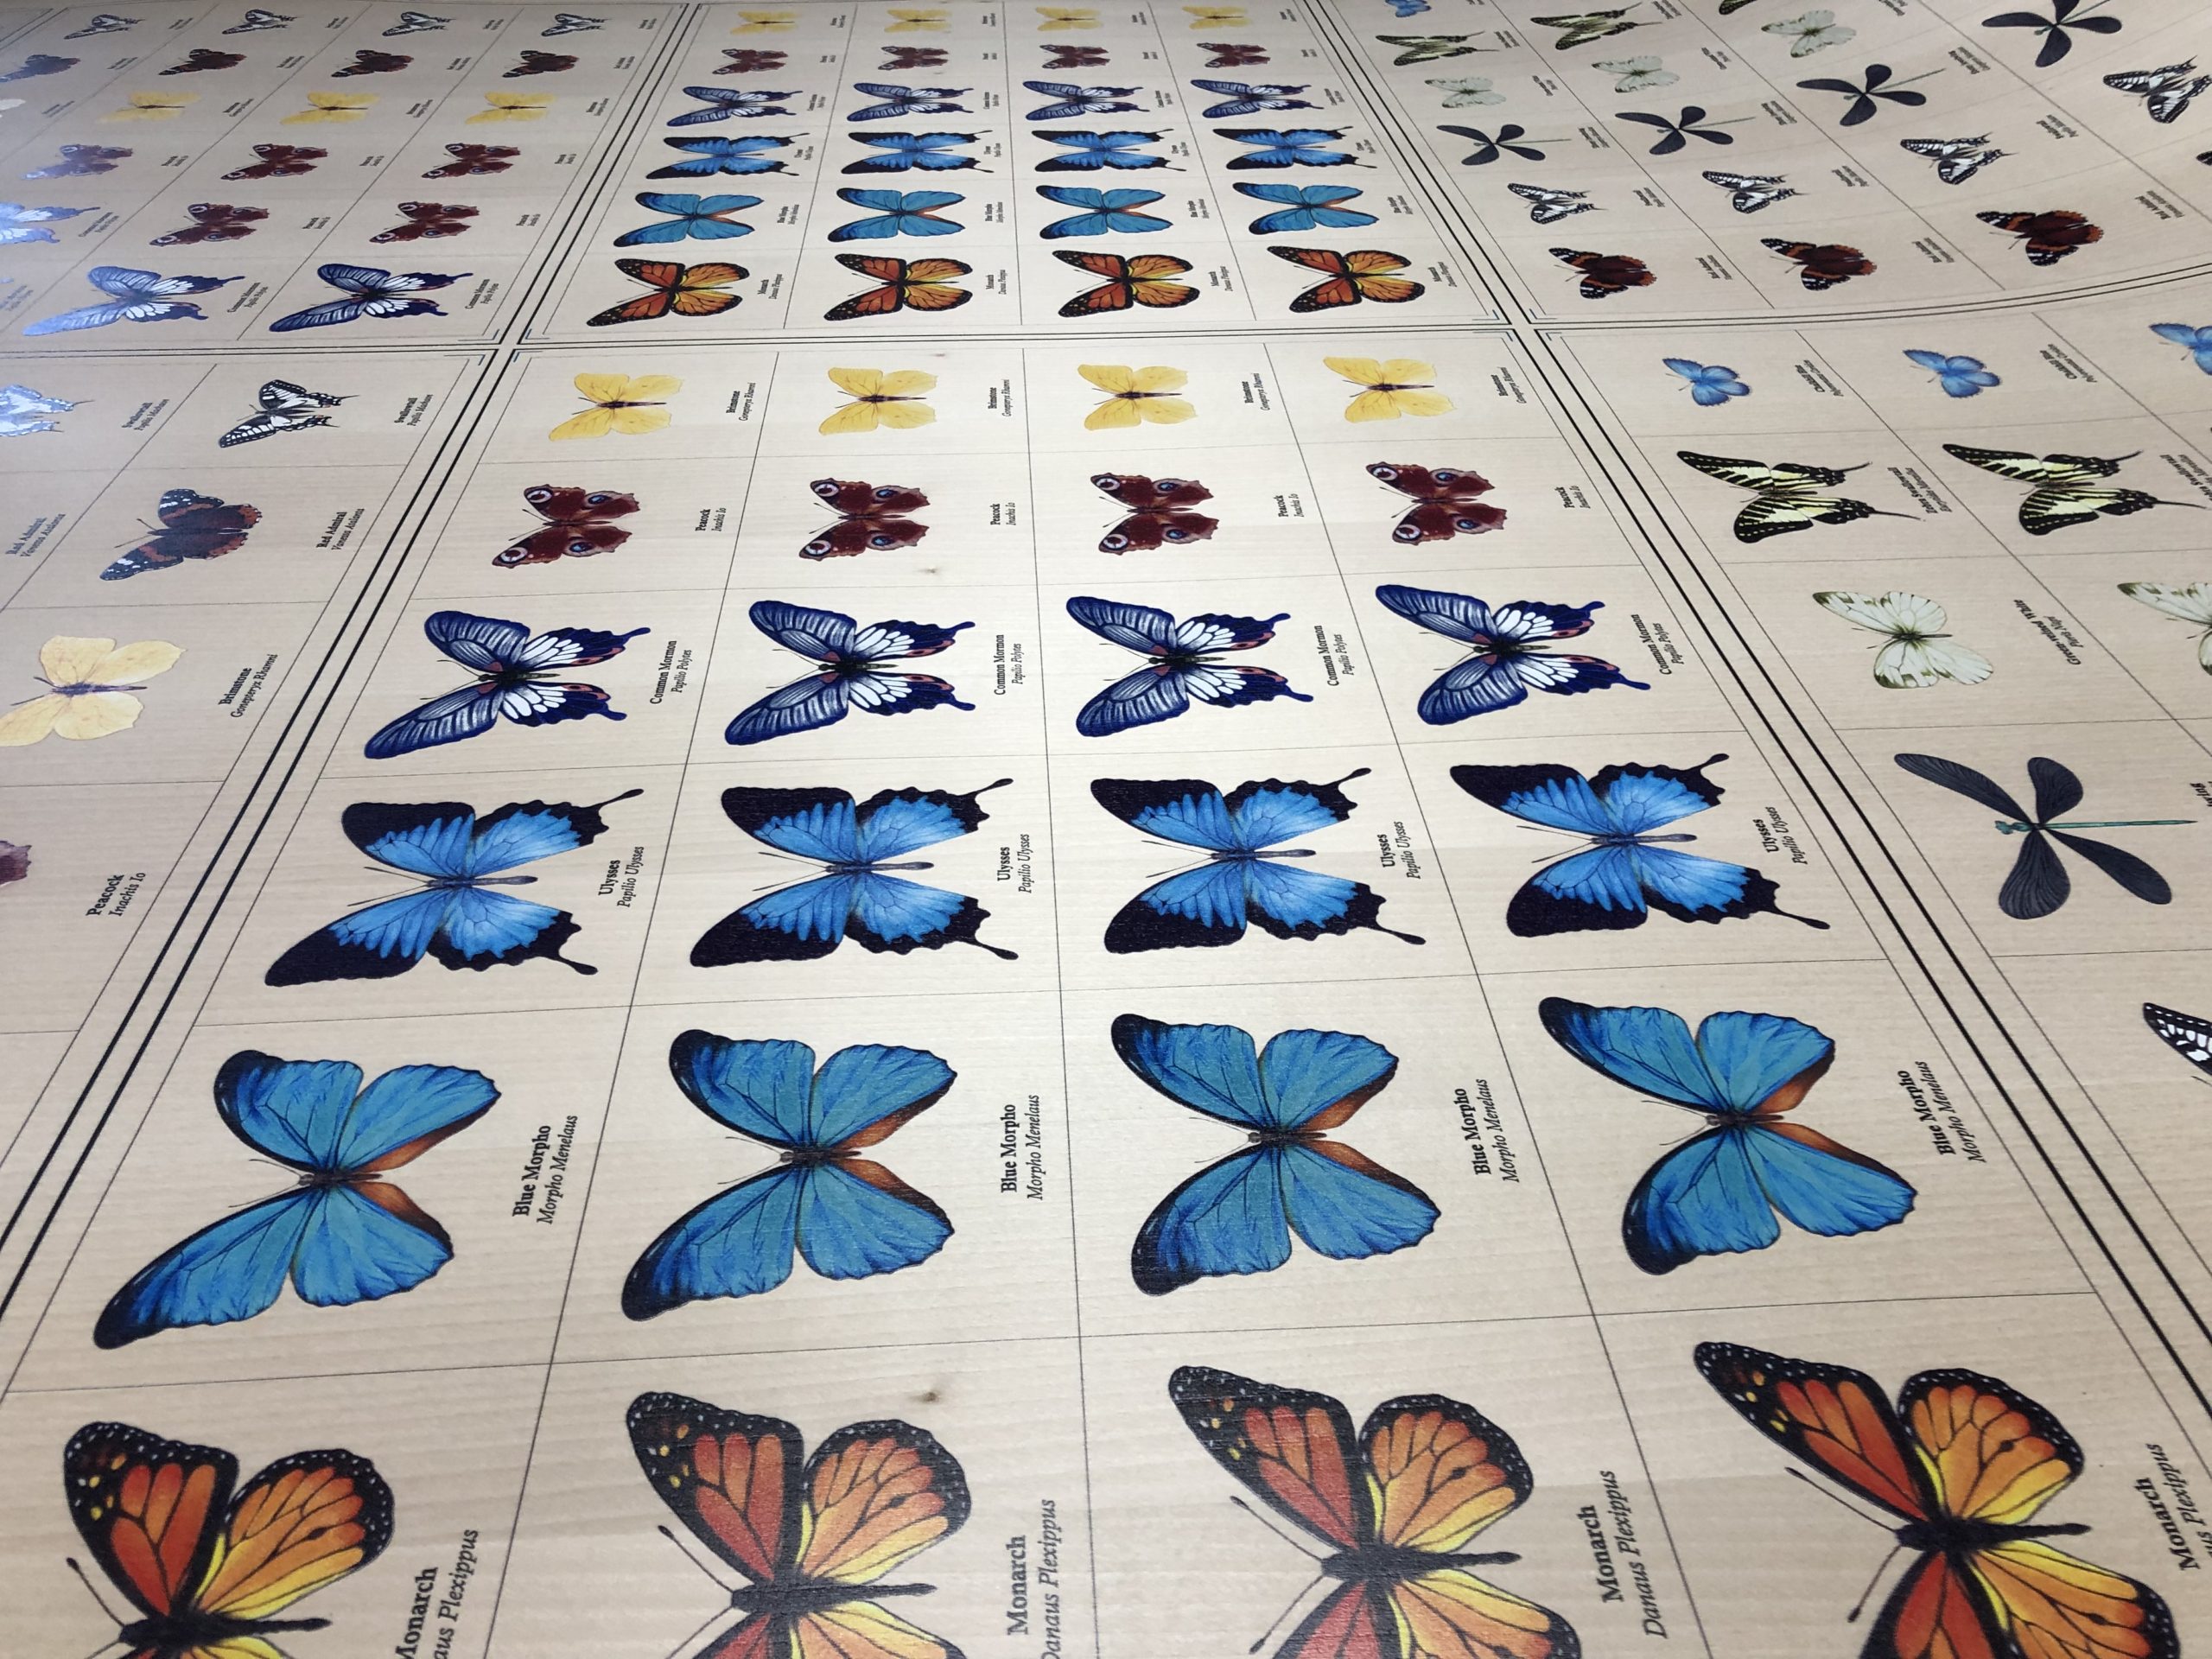 Butterflies printed on wood veneer